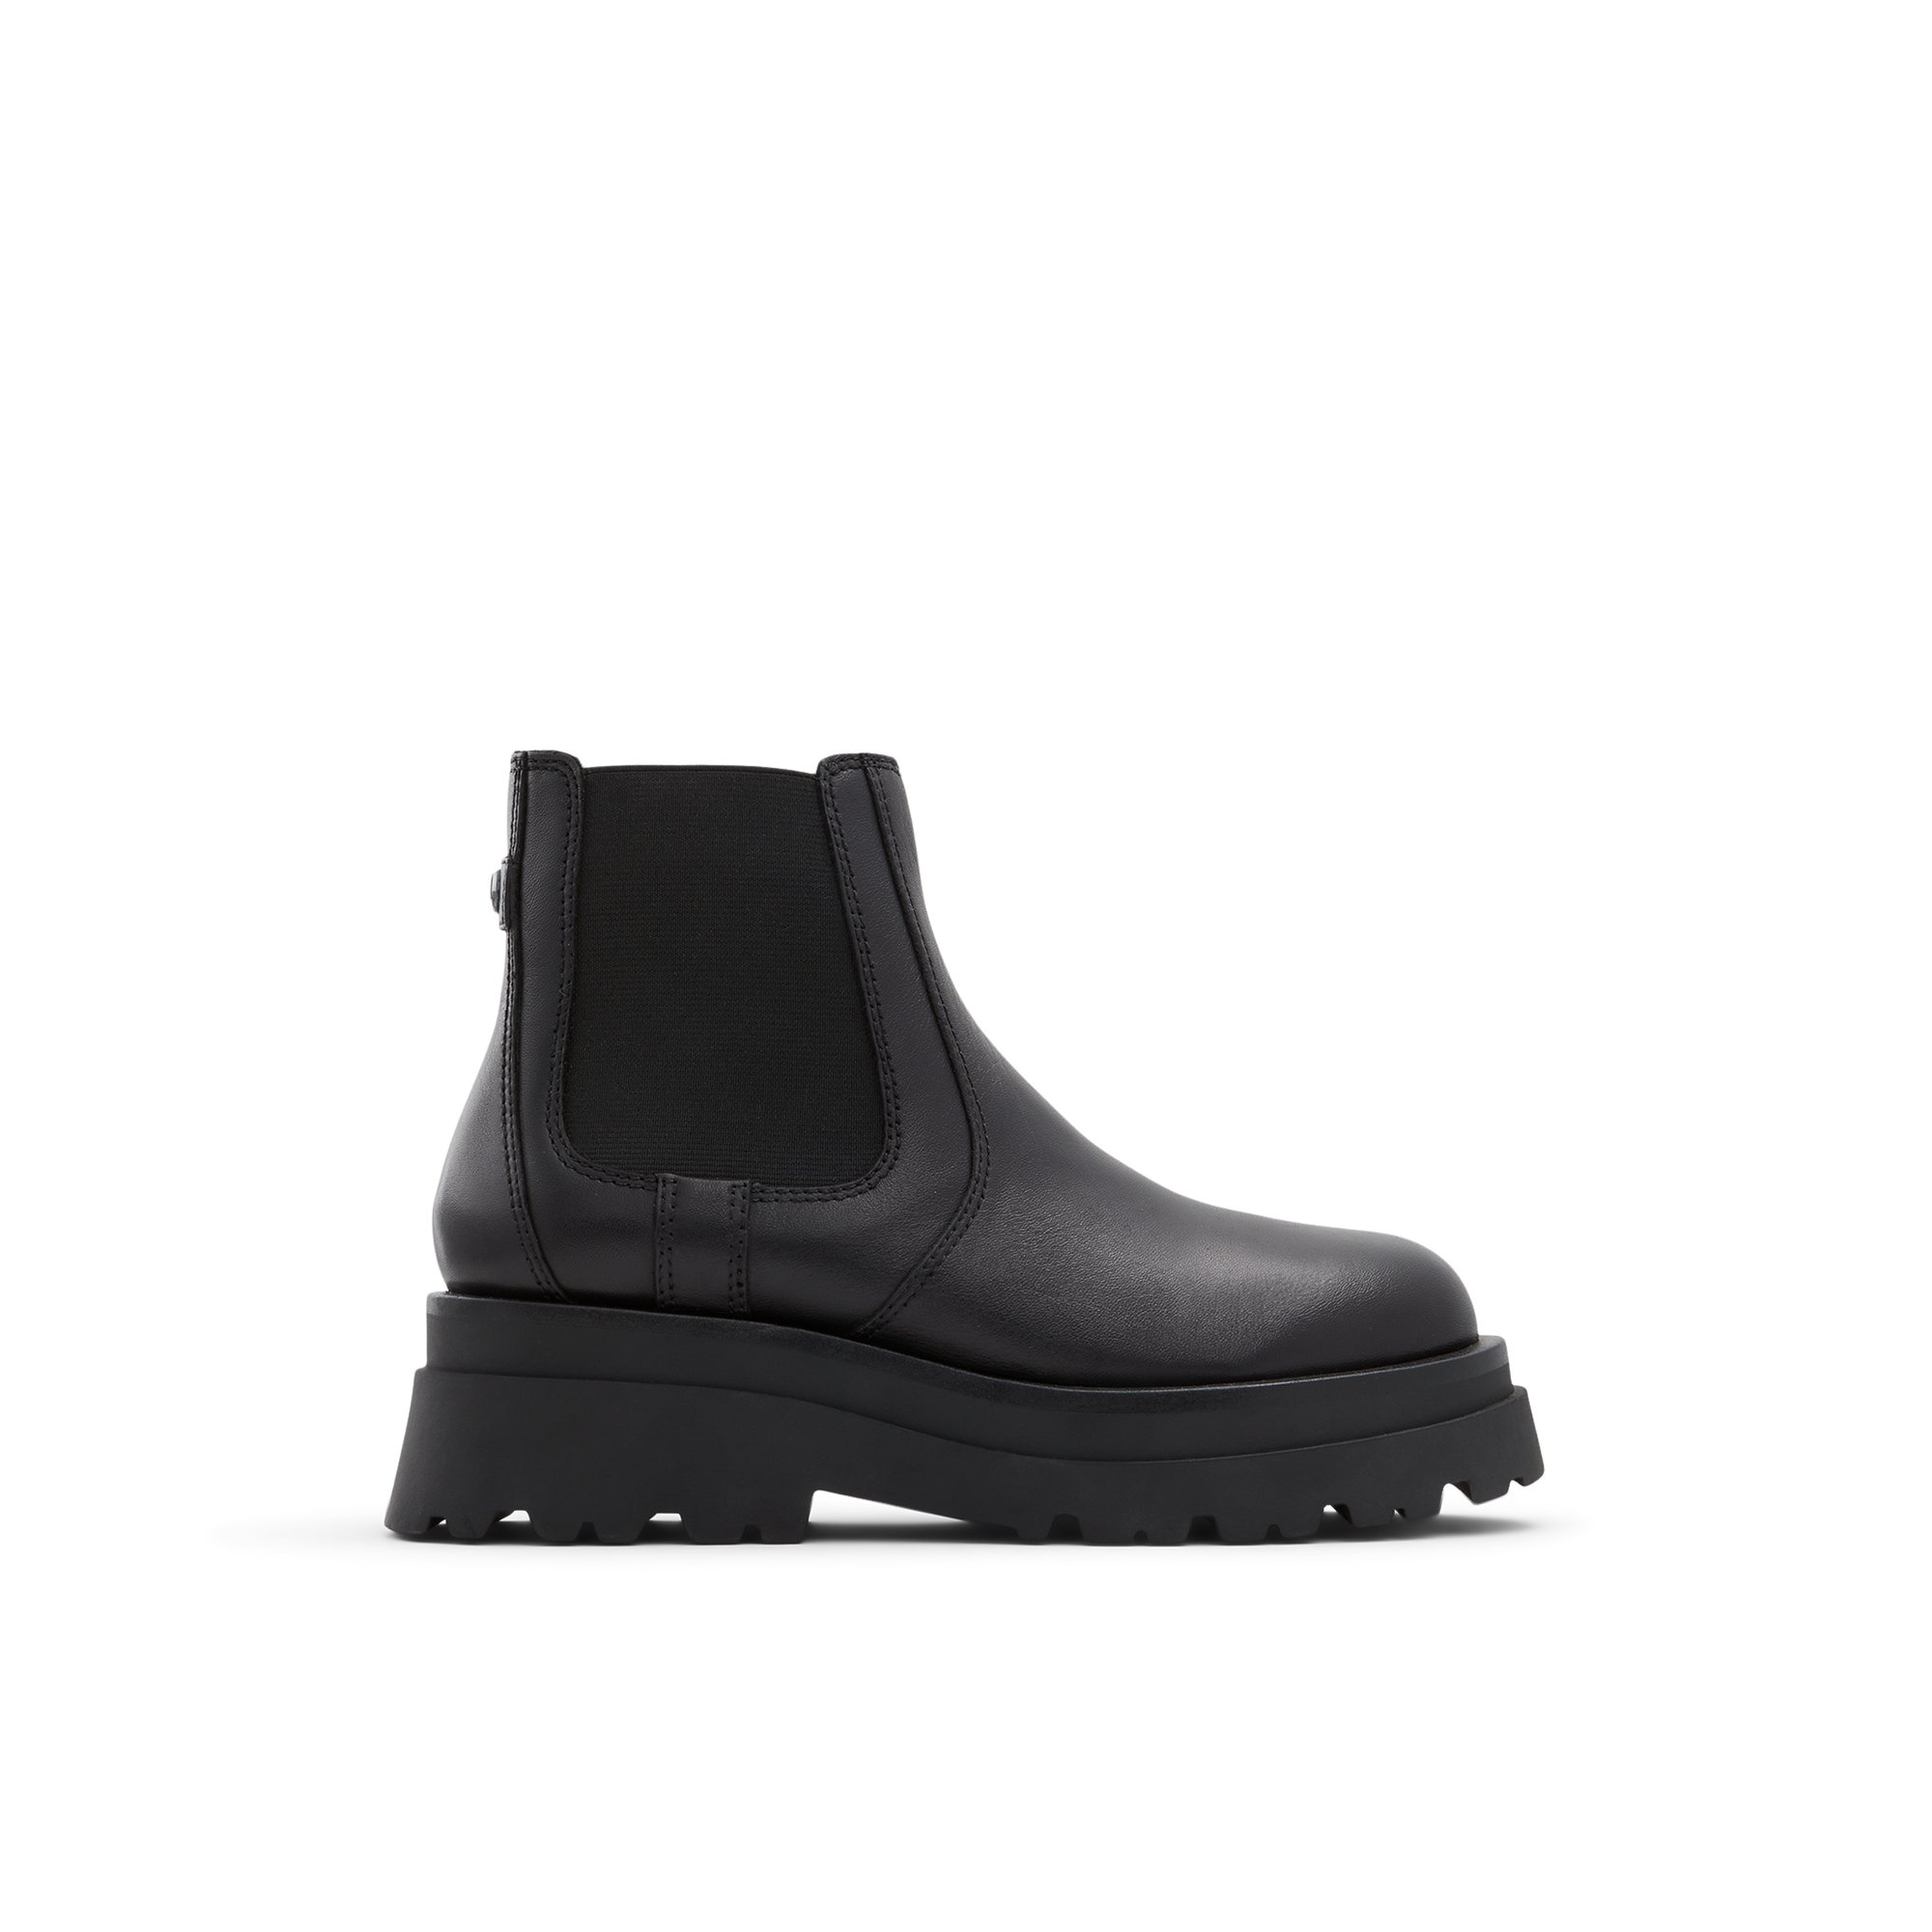 ALDO Stompd - Women's Casual Boot - Black